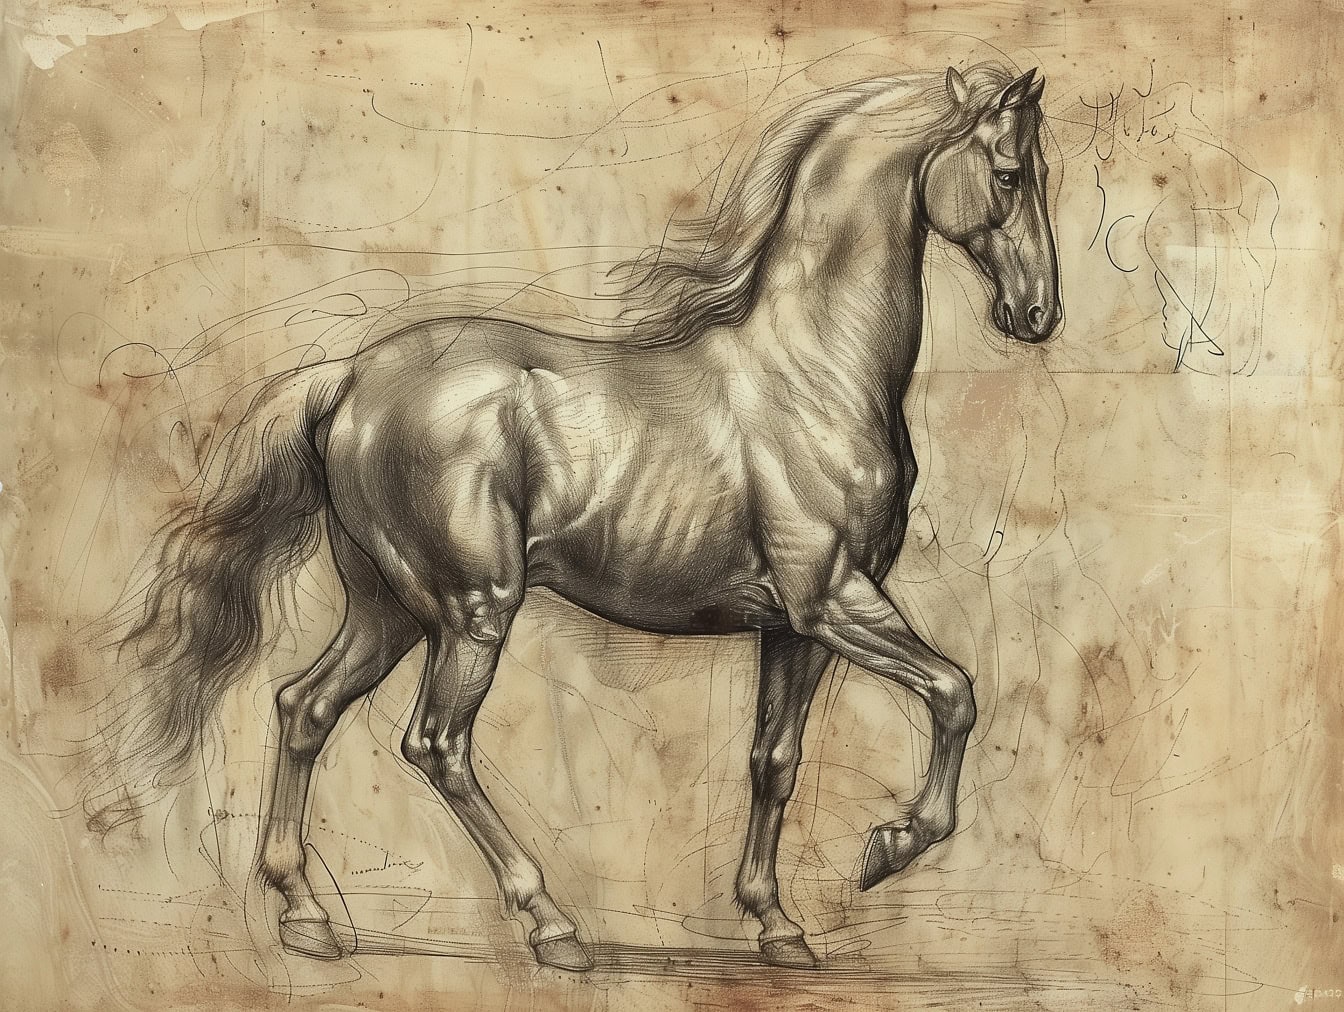 Grafitna skica konja lipicanca s lijepim sjenčanjem u stilu srednjovjekovnog umjetničkog crteža